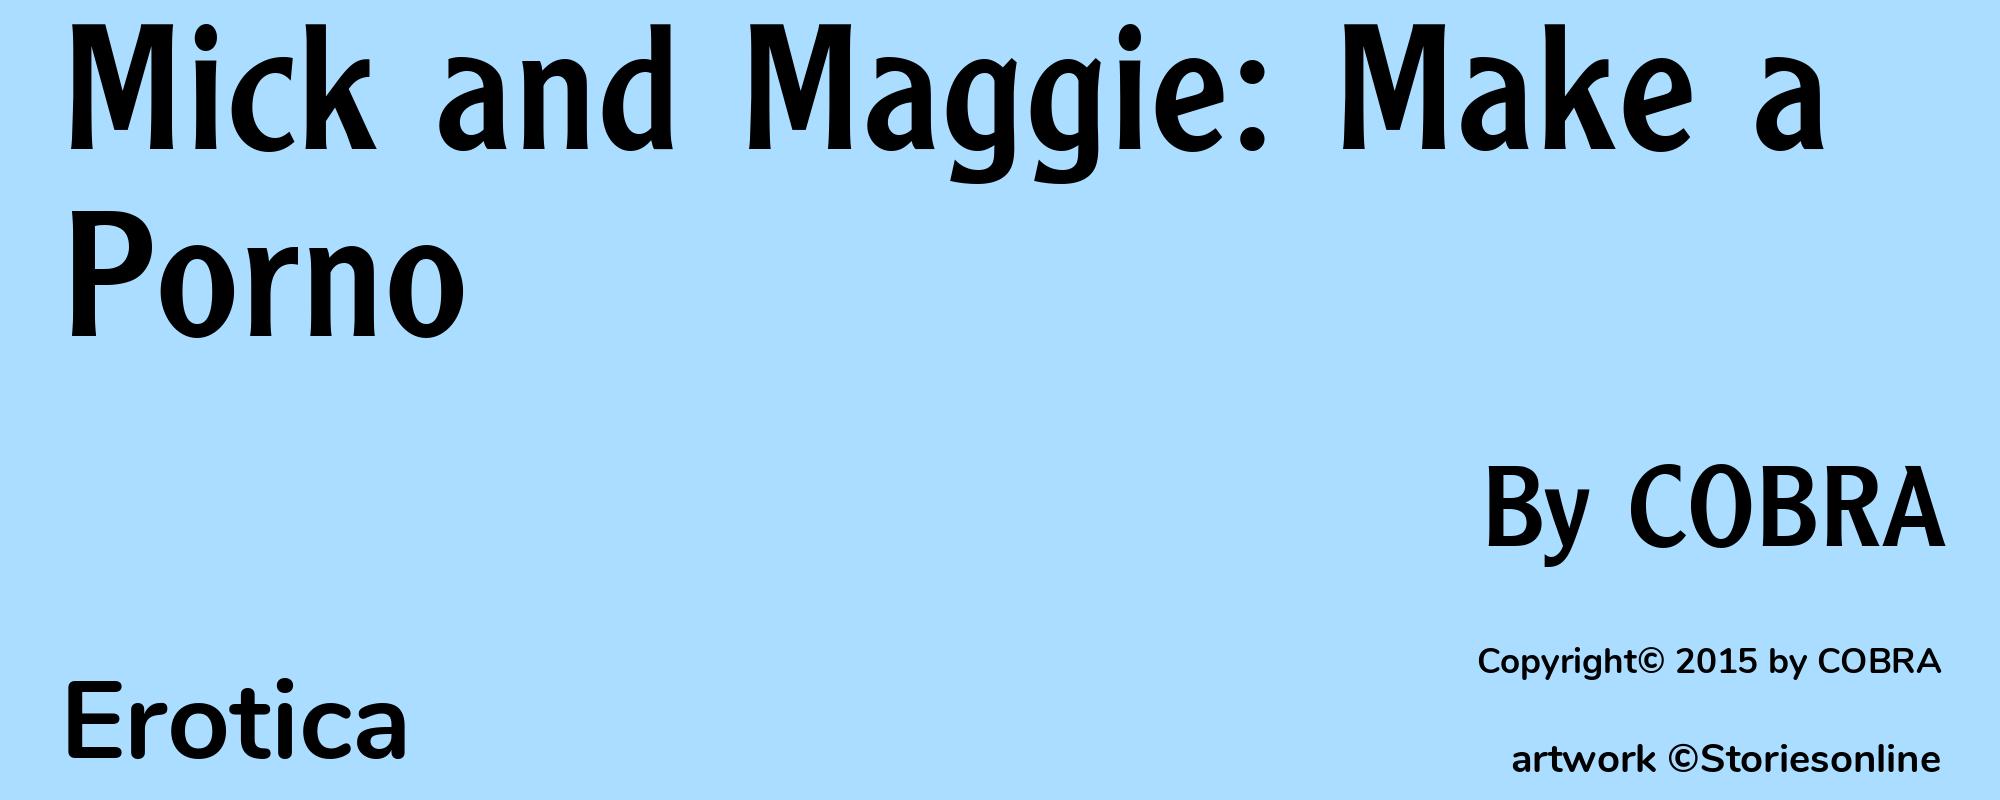 Mick and Maggie: Make a Porno - Cover